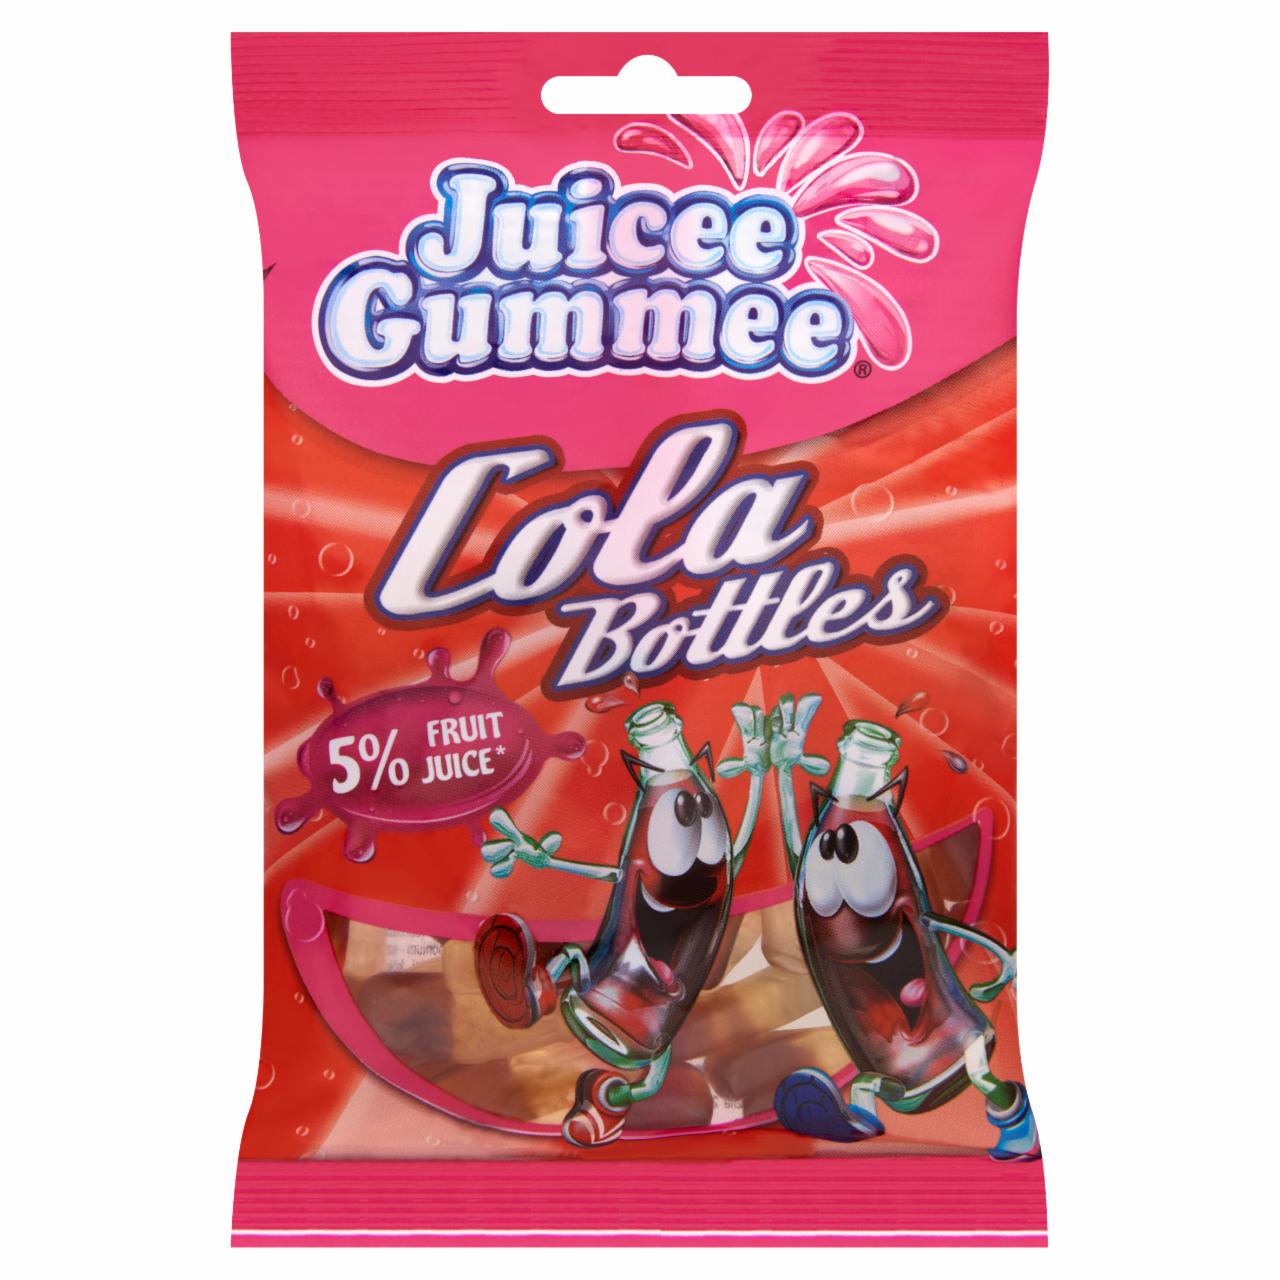 Képek - Juicee Gummee Cola Bottles gyümölcsös ízű gumicukor 100 g